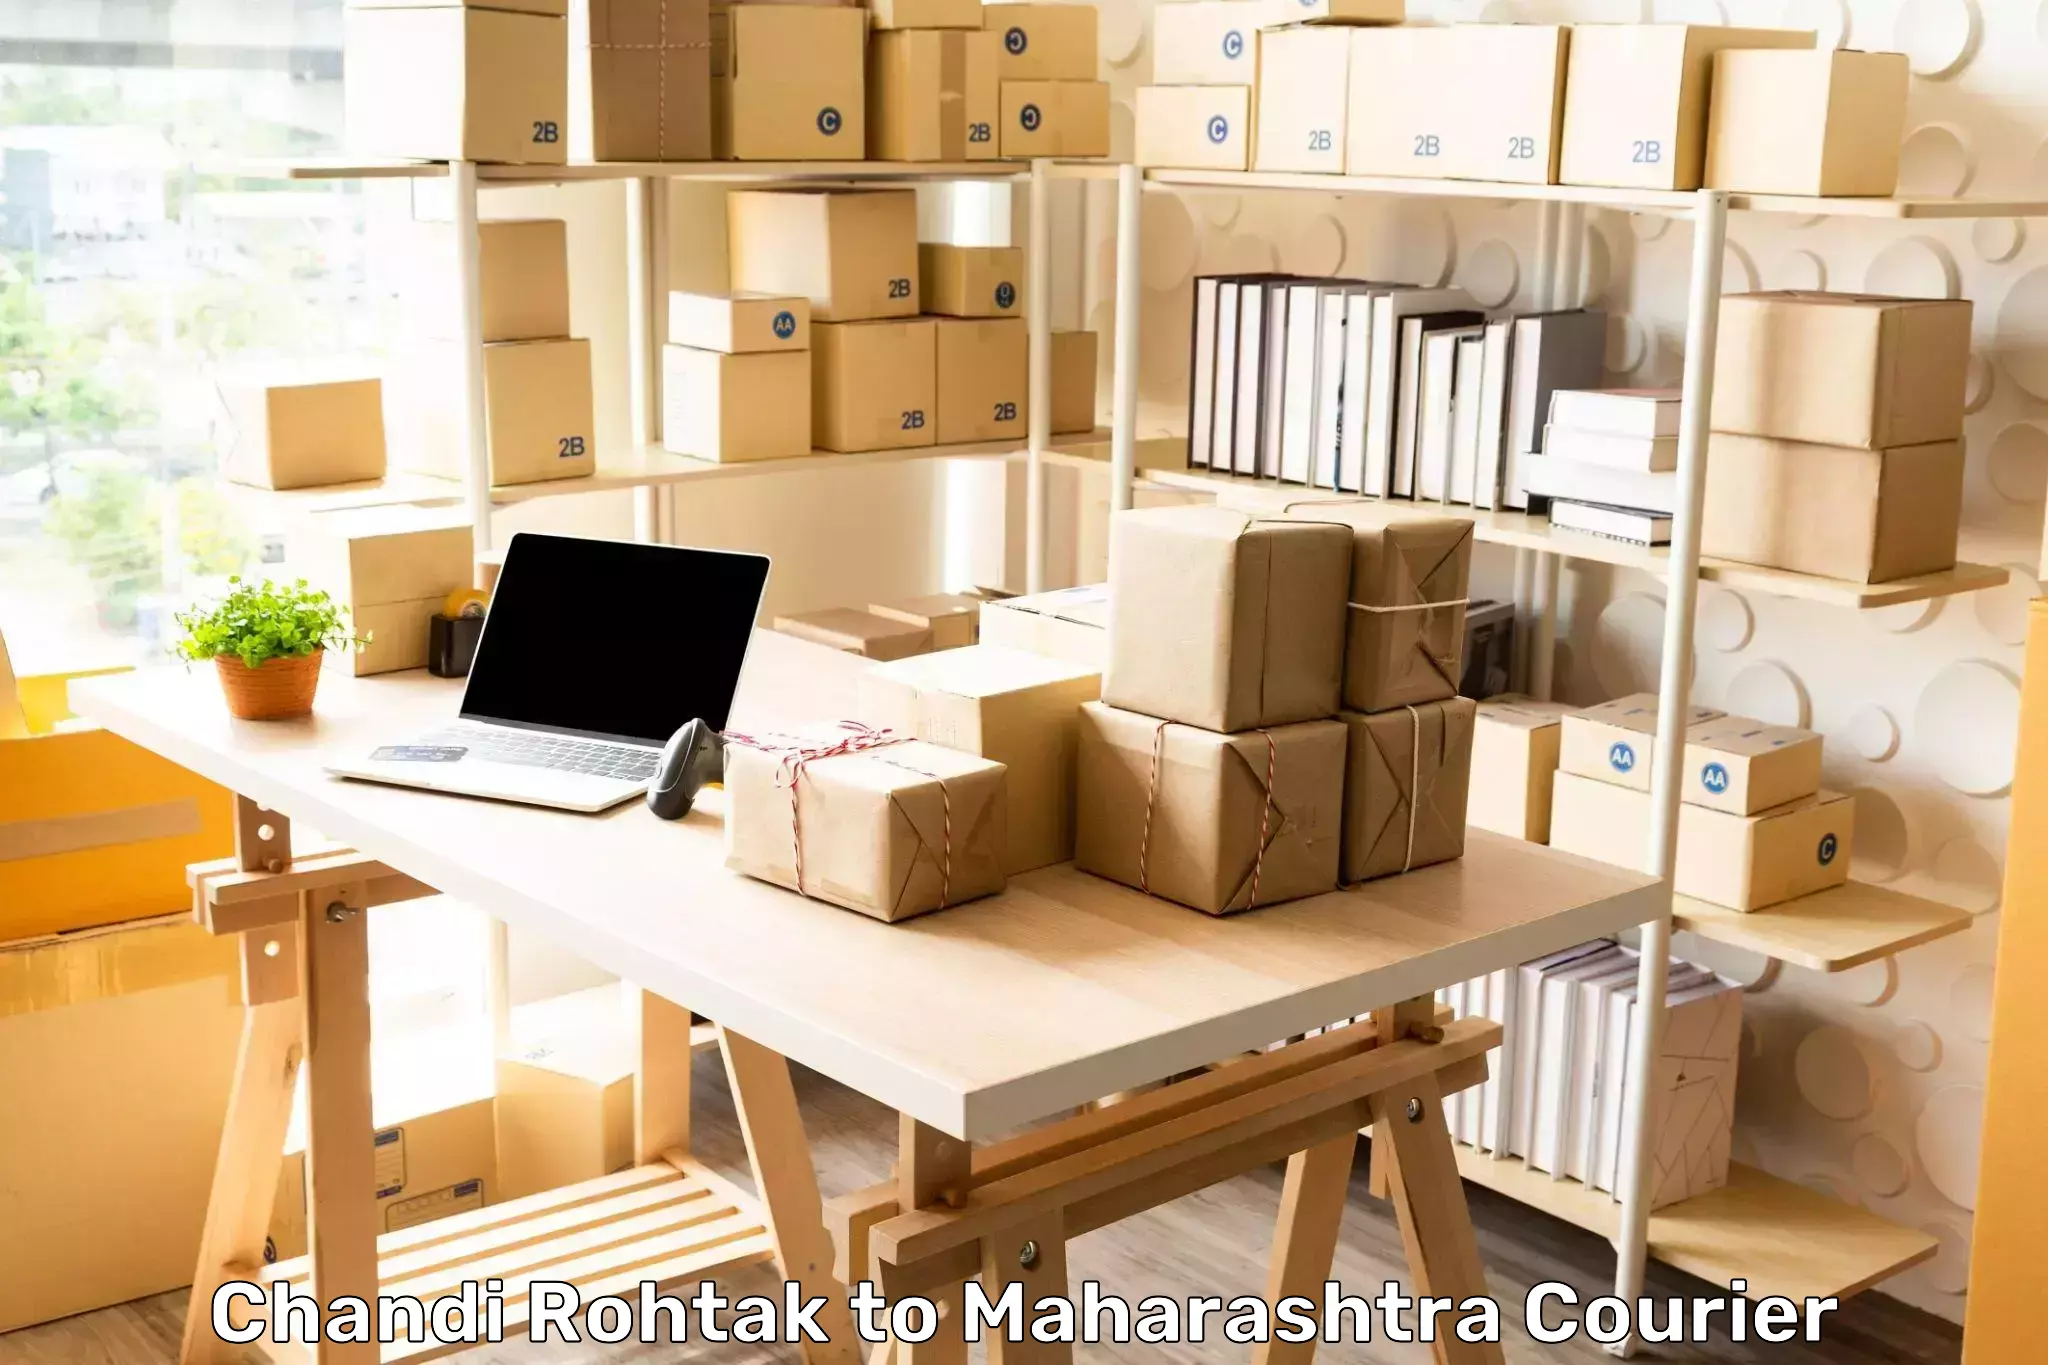 Dynamic courier operations Chandi Rohtak to Maharashtra